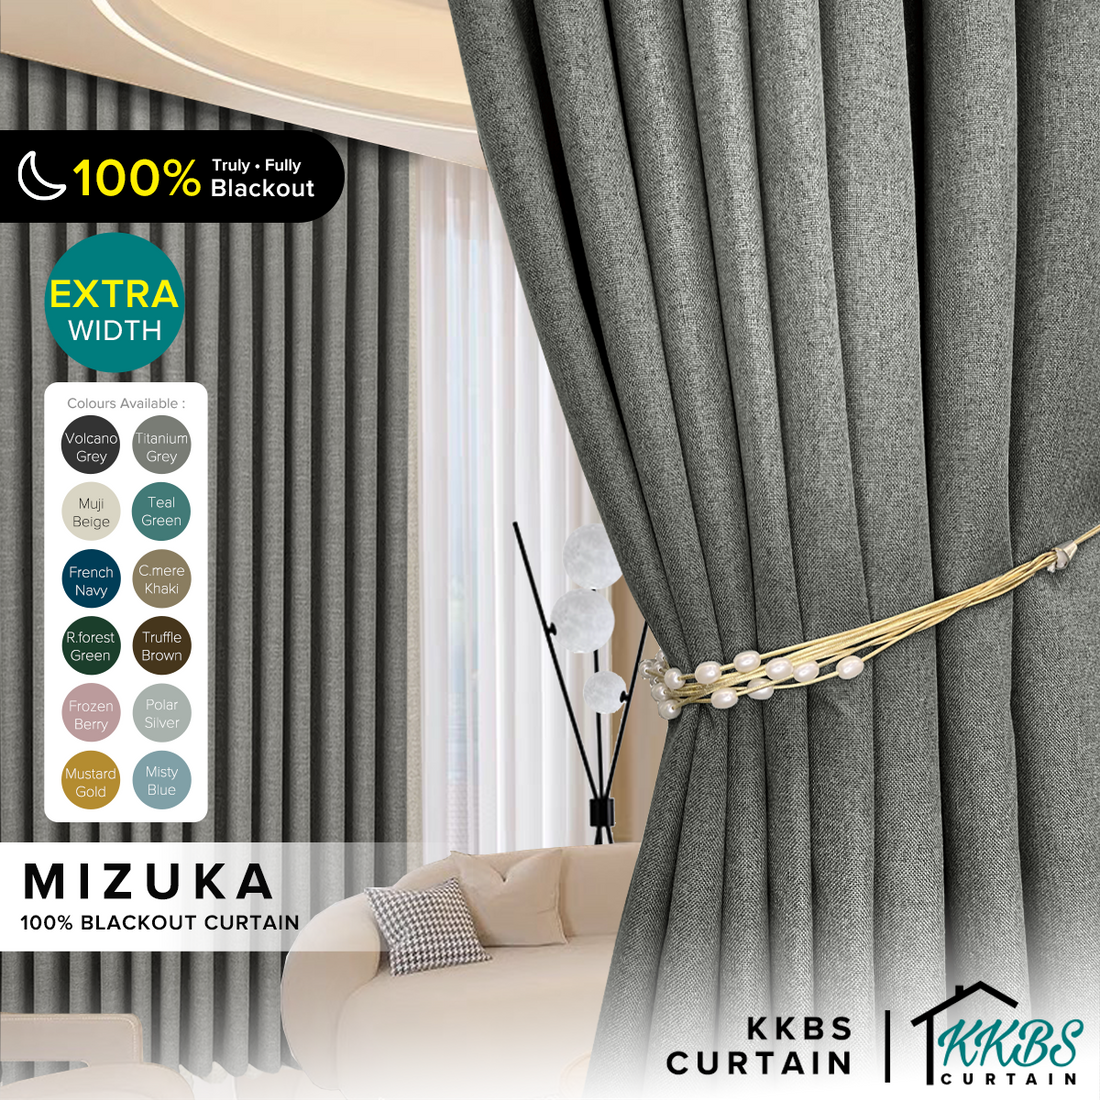 Mizuka 100% Blackout Curtain Ready Made Extra Width